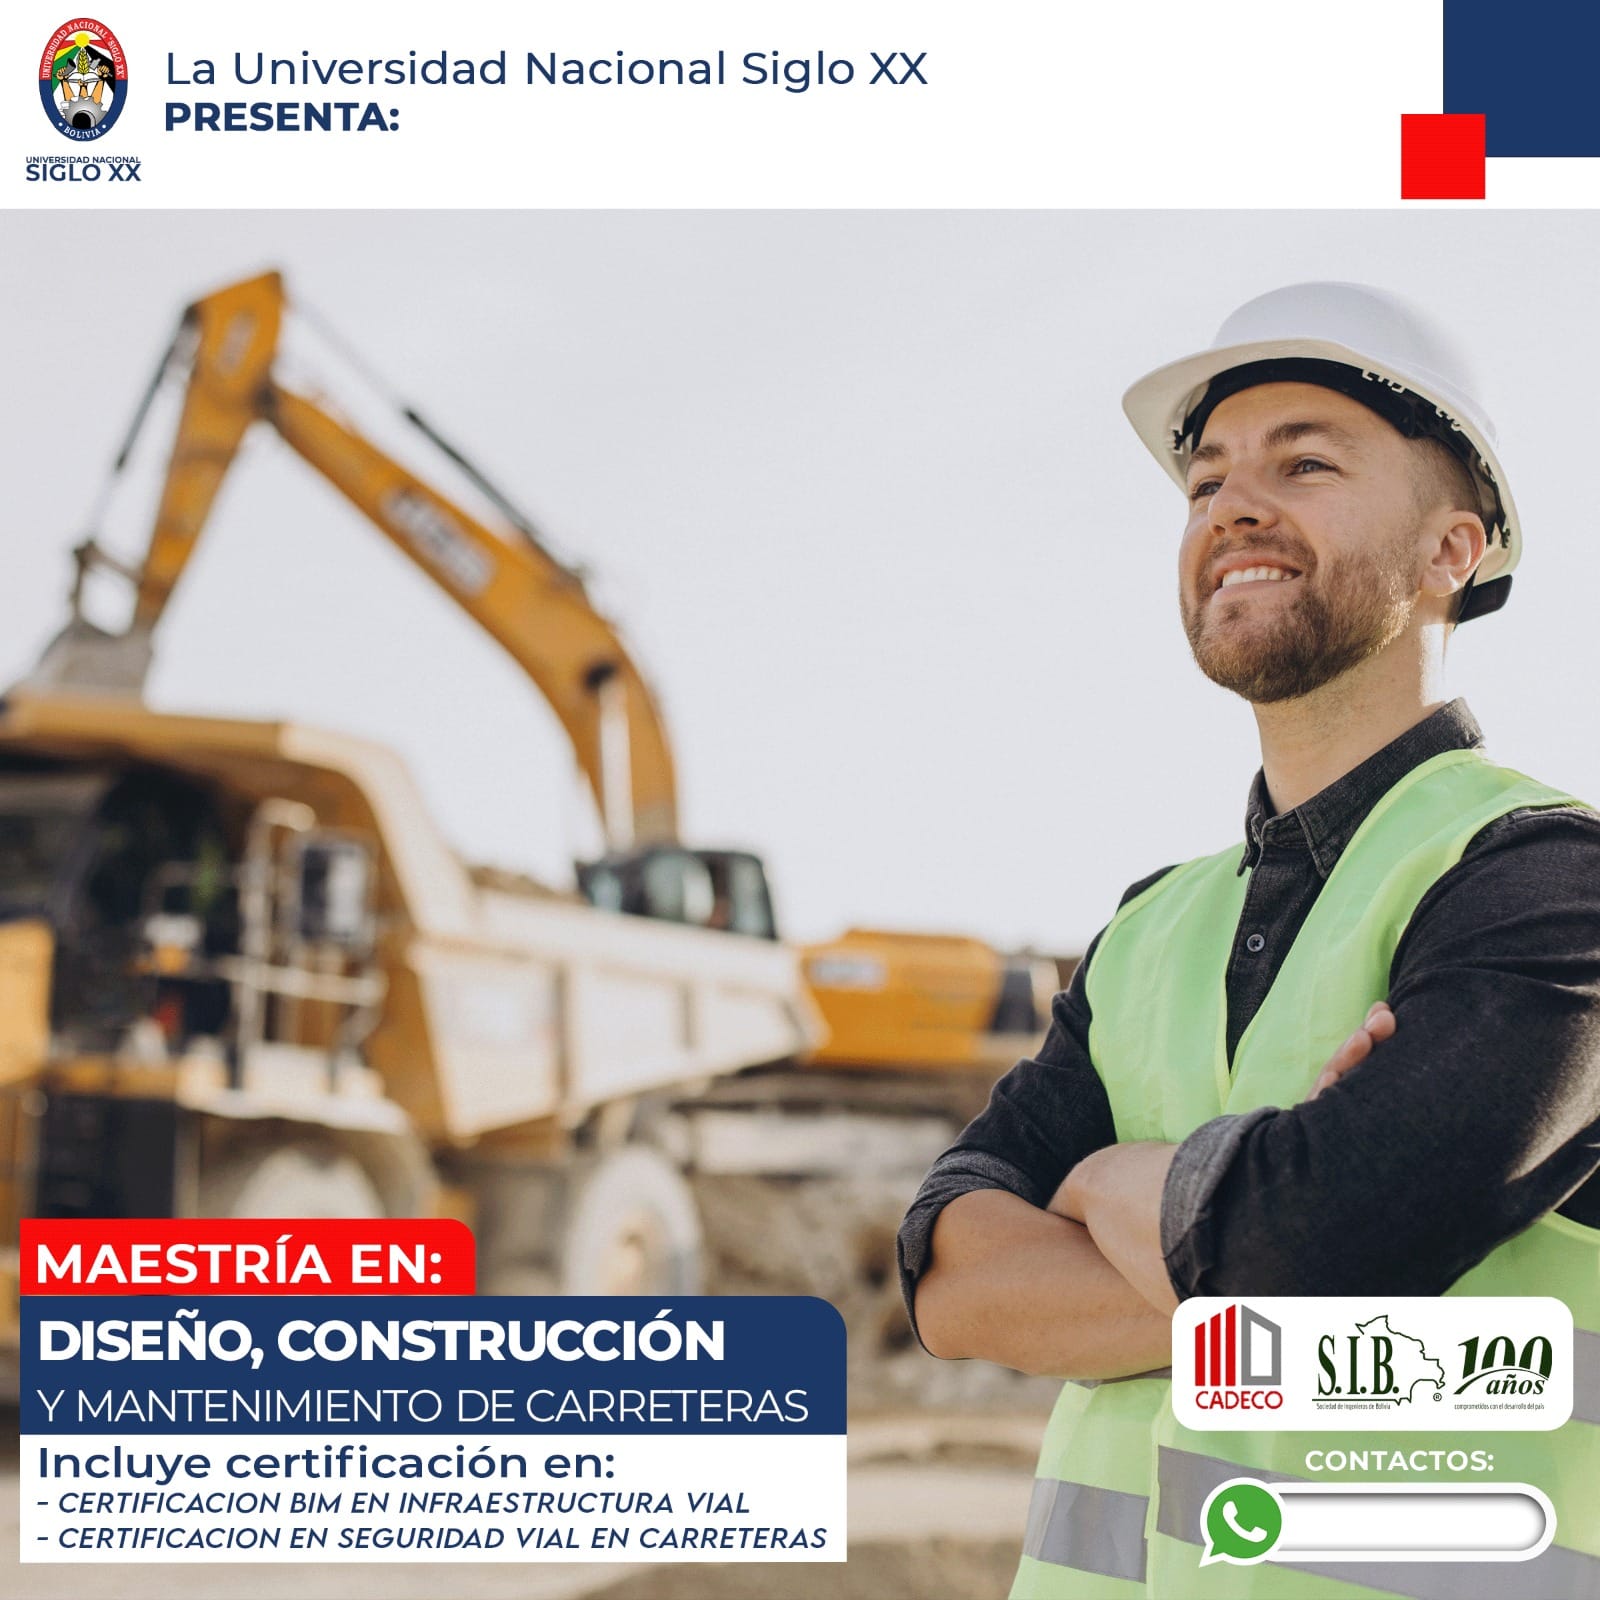 Maestría MAESTRÍA EN DISEÑO, CONSTRUCCIÓN Y MANTENIMIENTO DE CARRETERAS.